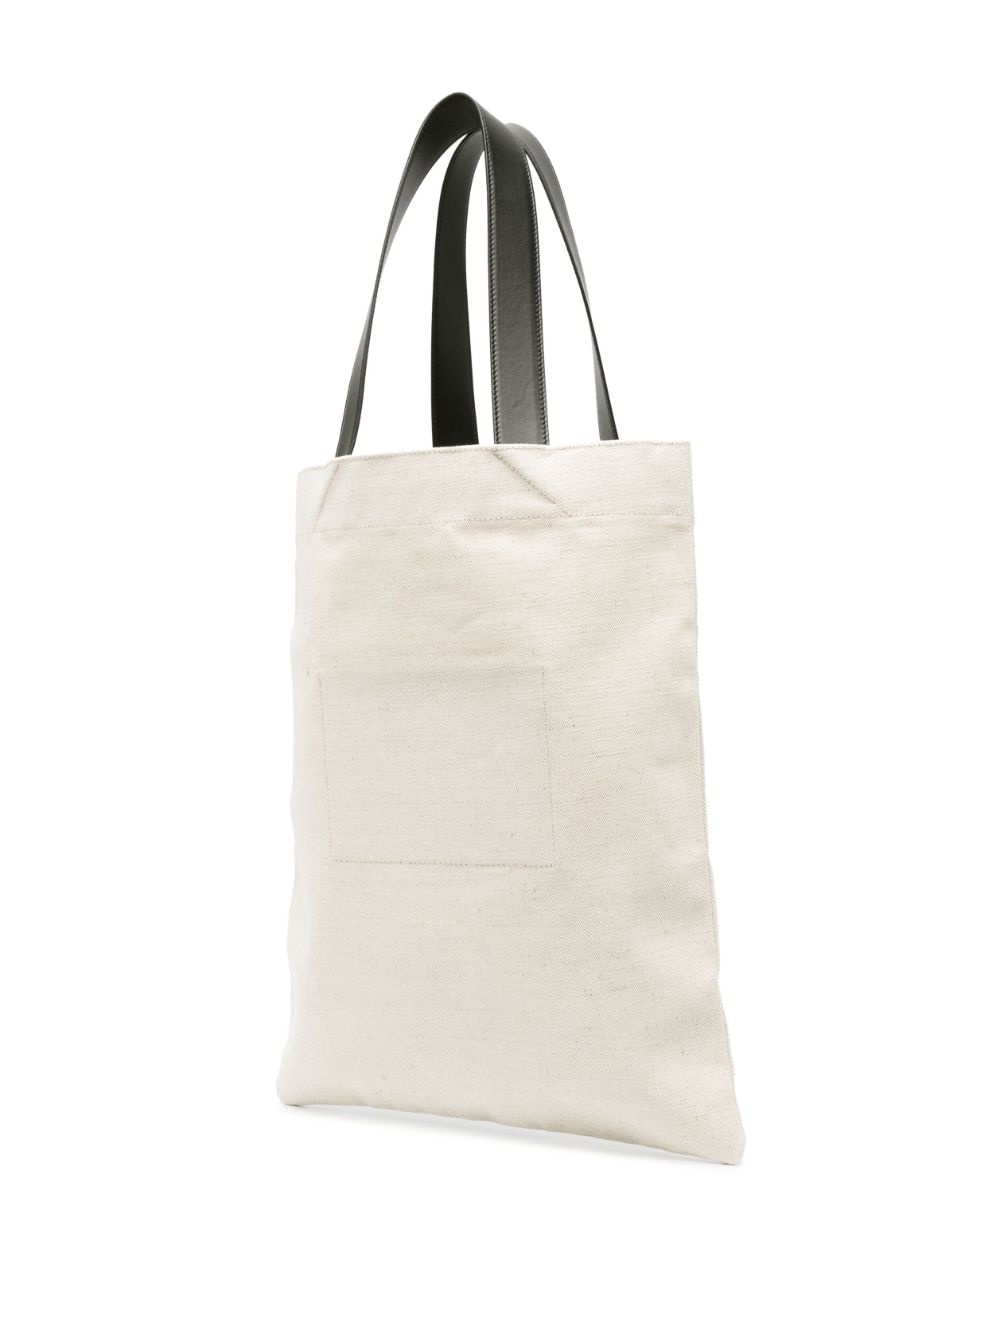 Book tote linen shopping bag - 3